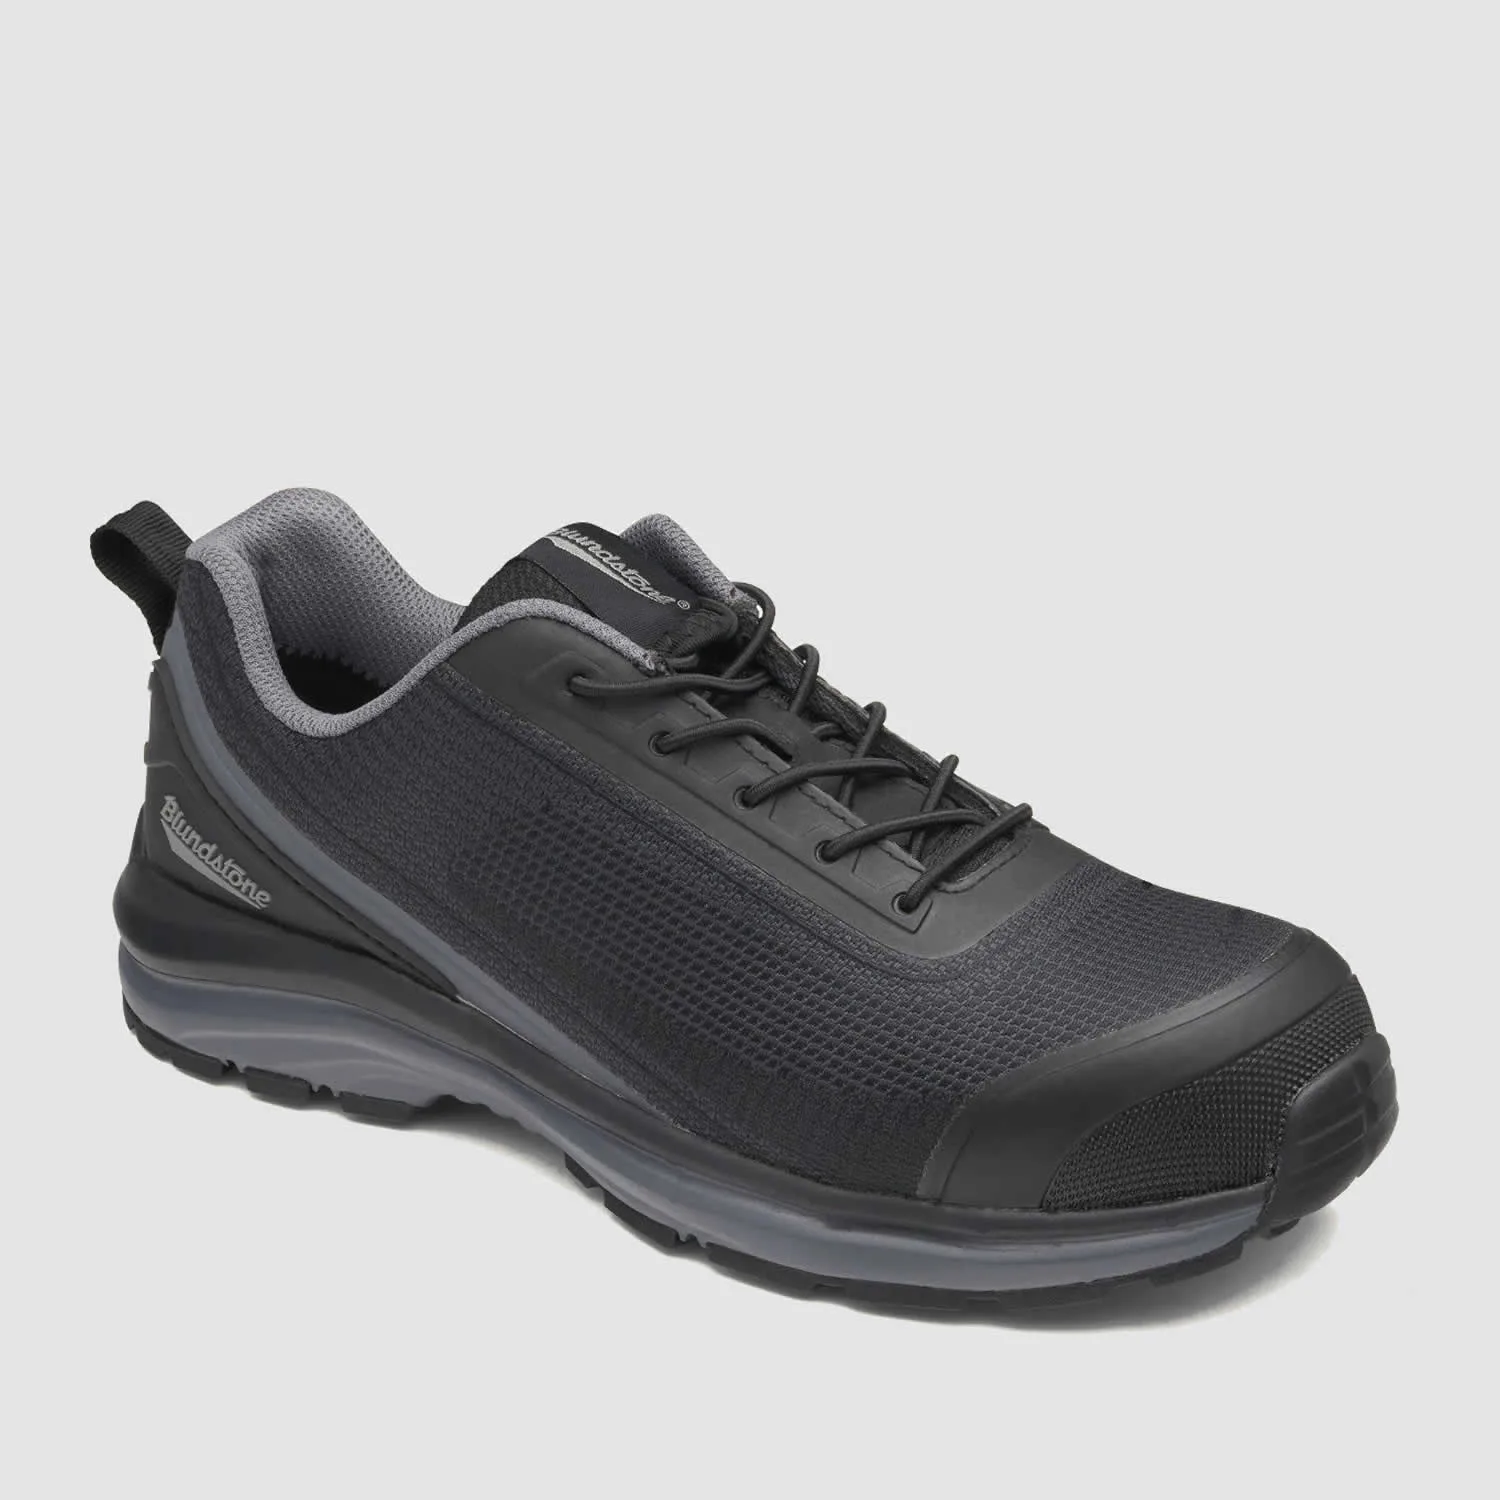 Blundstone #883 Women's Safety Sneaker / Jogger - Black